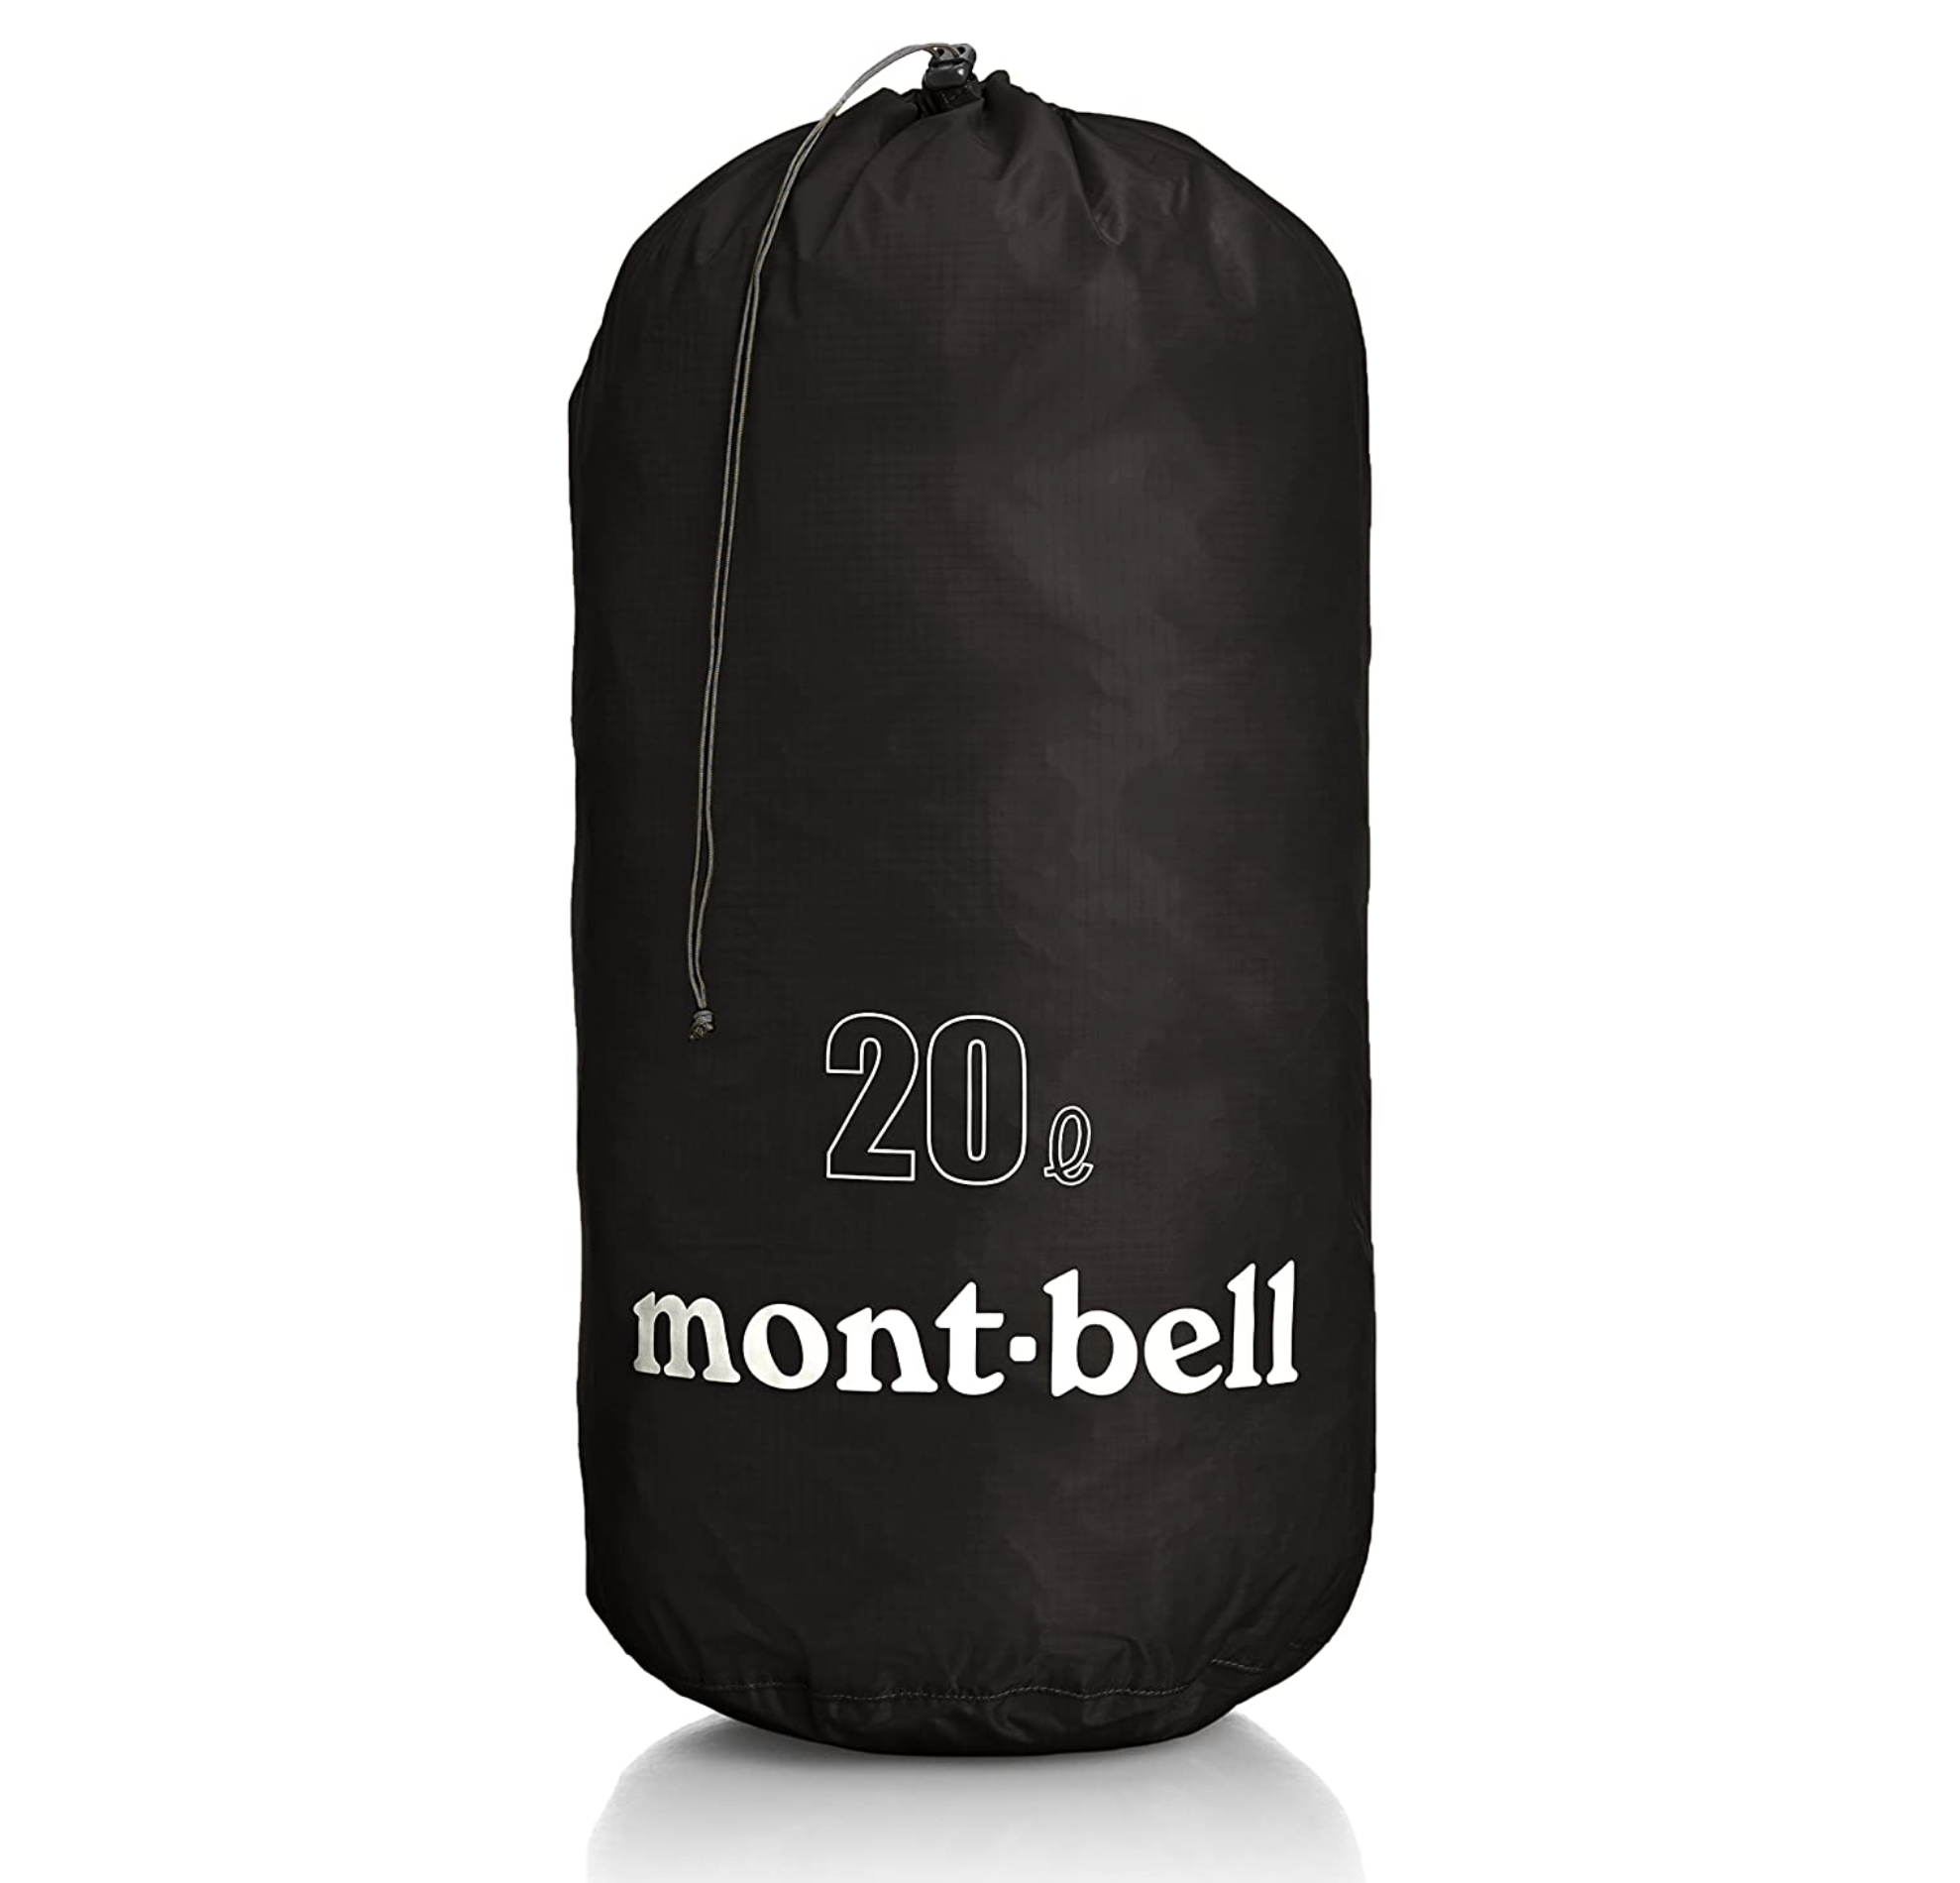 mont-bell(モンベル) ライトスタッフバッグ